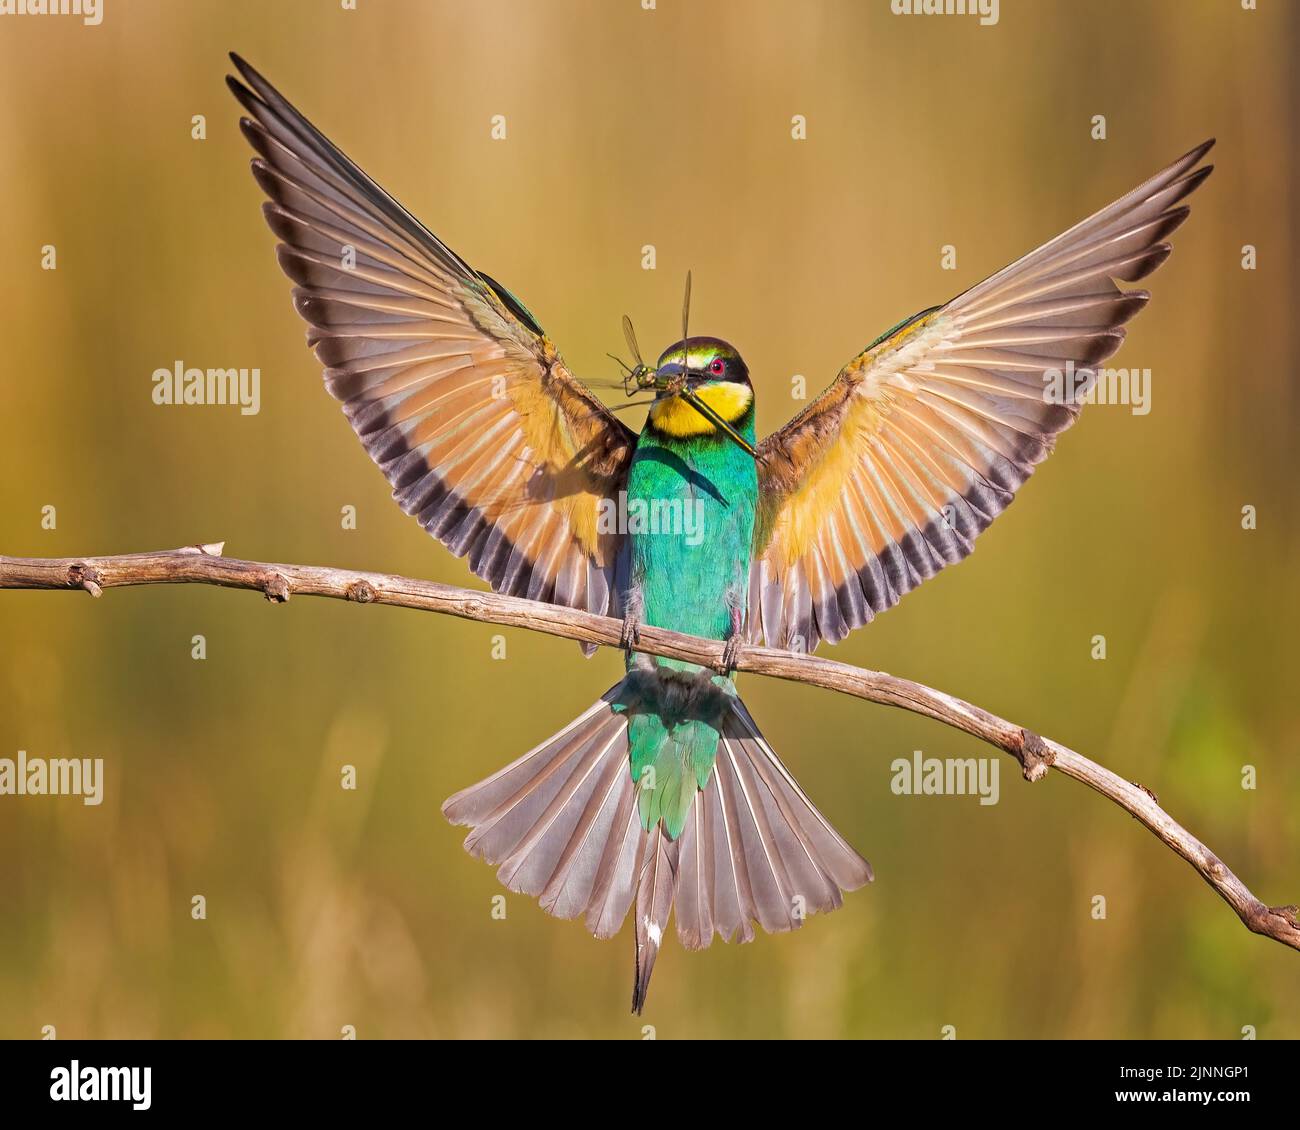 Apiculteur européen (Merops apiaster) avec grande libellule comme proie et nourriture, chasse de la perche, atterrissage, coucher de soleil, Saxe-Anhalt, Allemagne Banque D'Images